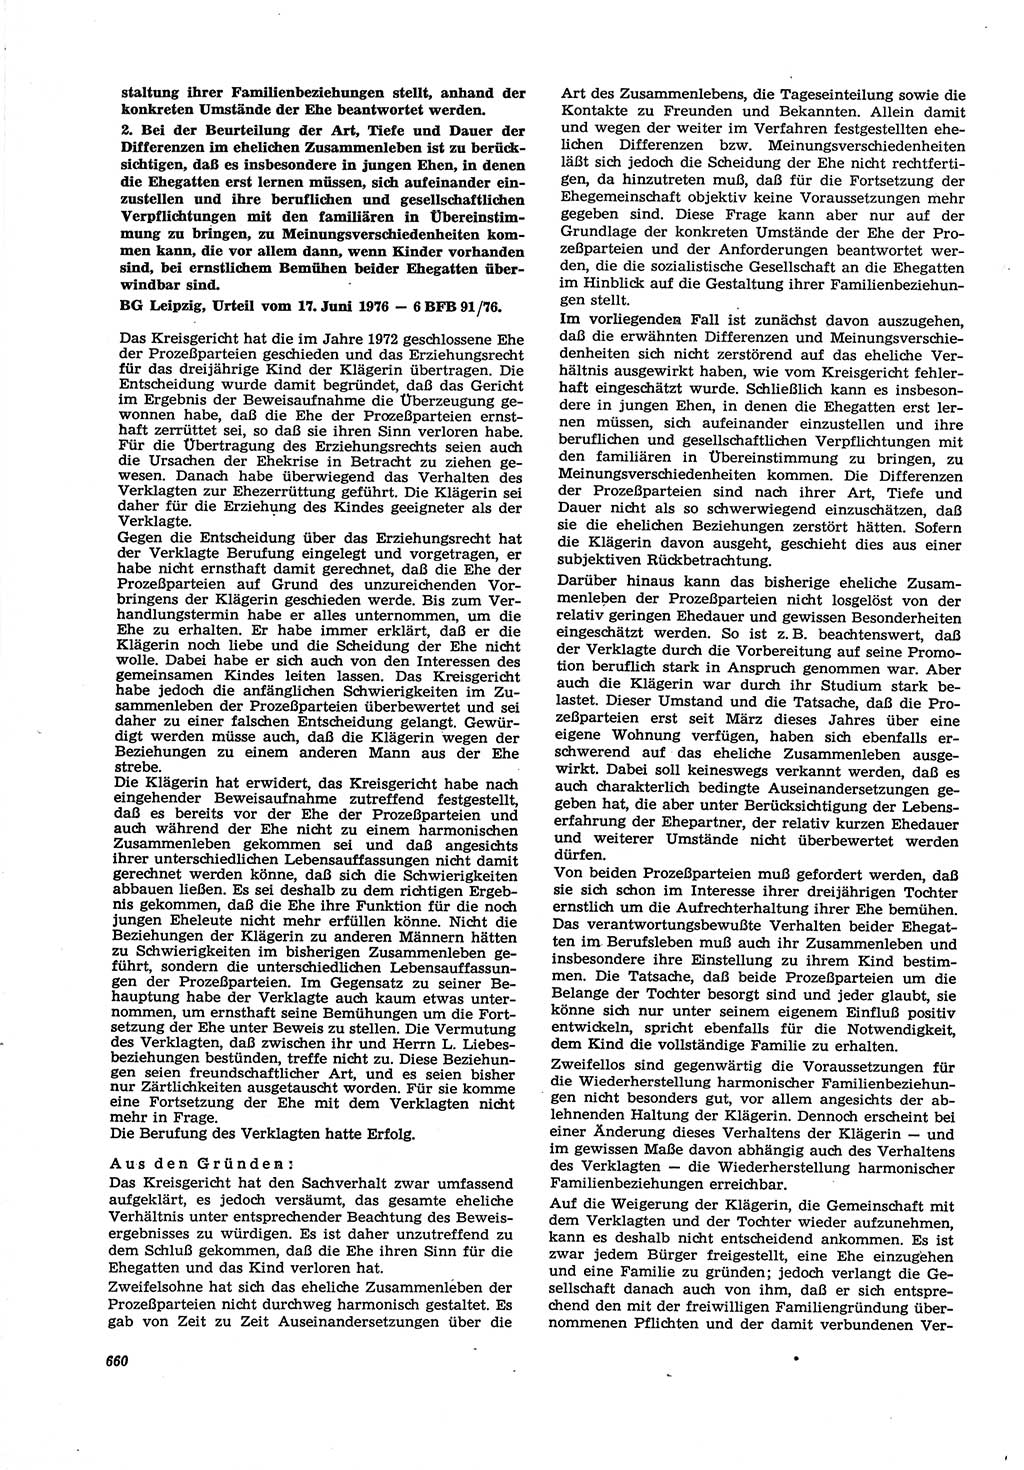 Neue Justiz (NJ), Zeitschrift für Recht und Rechtswissenschaft [Deutsche Demokratische Republik (DDR)], 30. Jahrgang 1976, Seite 660 (NJ DDR 1976, S. 660)